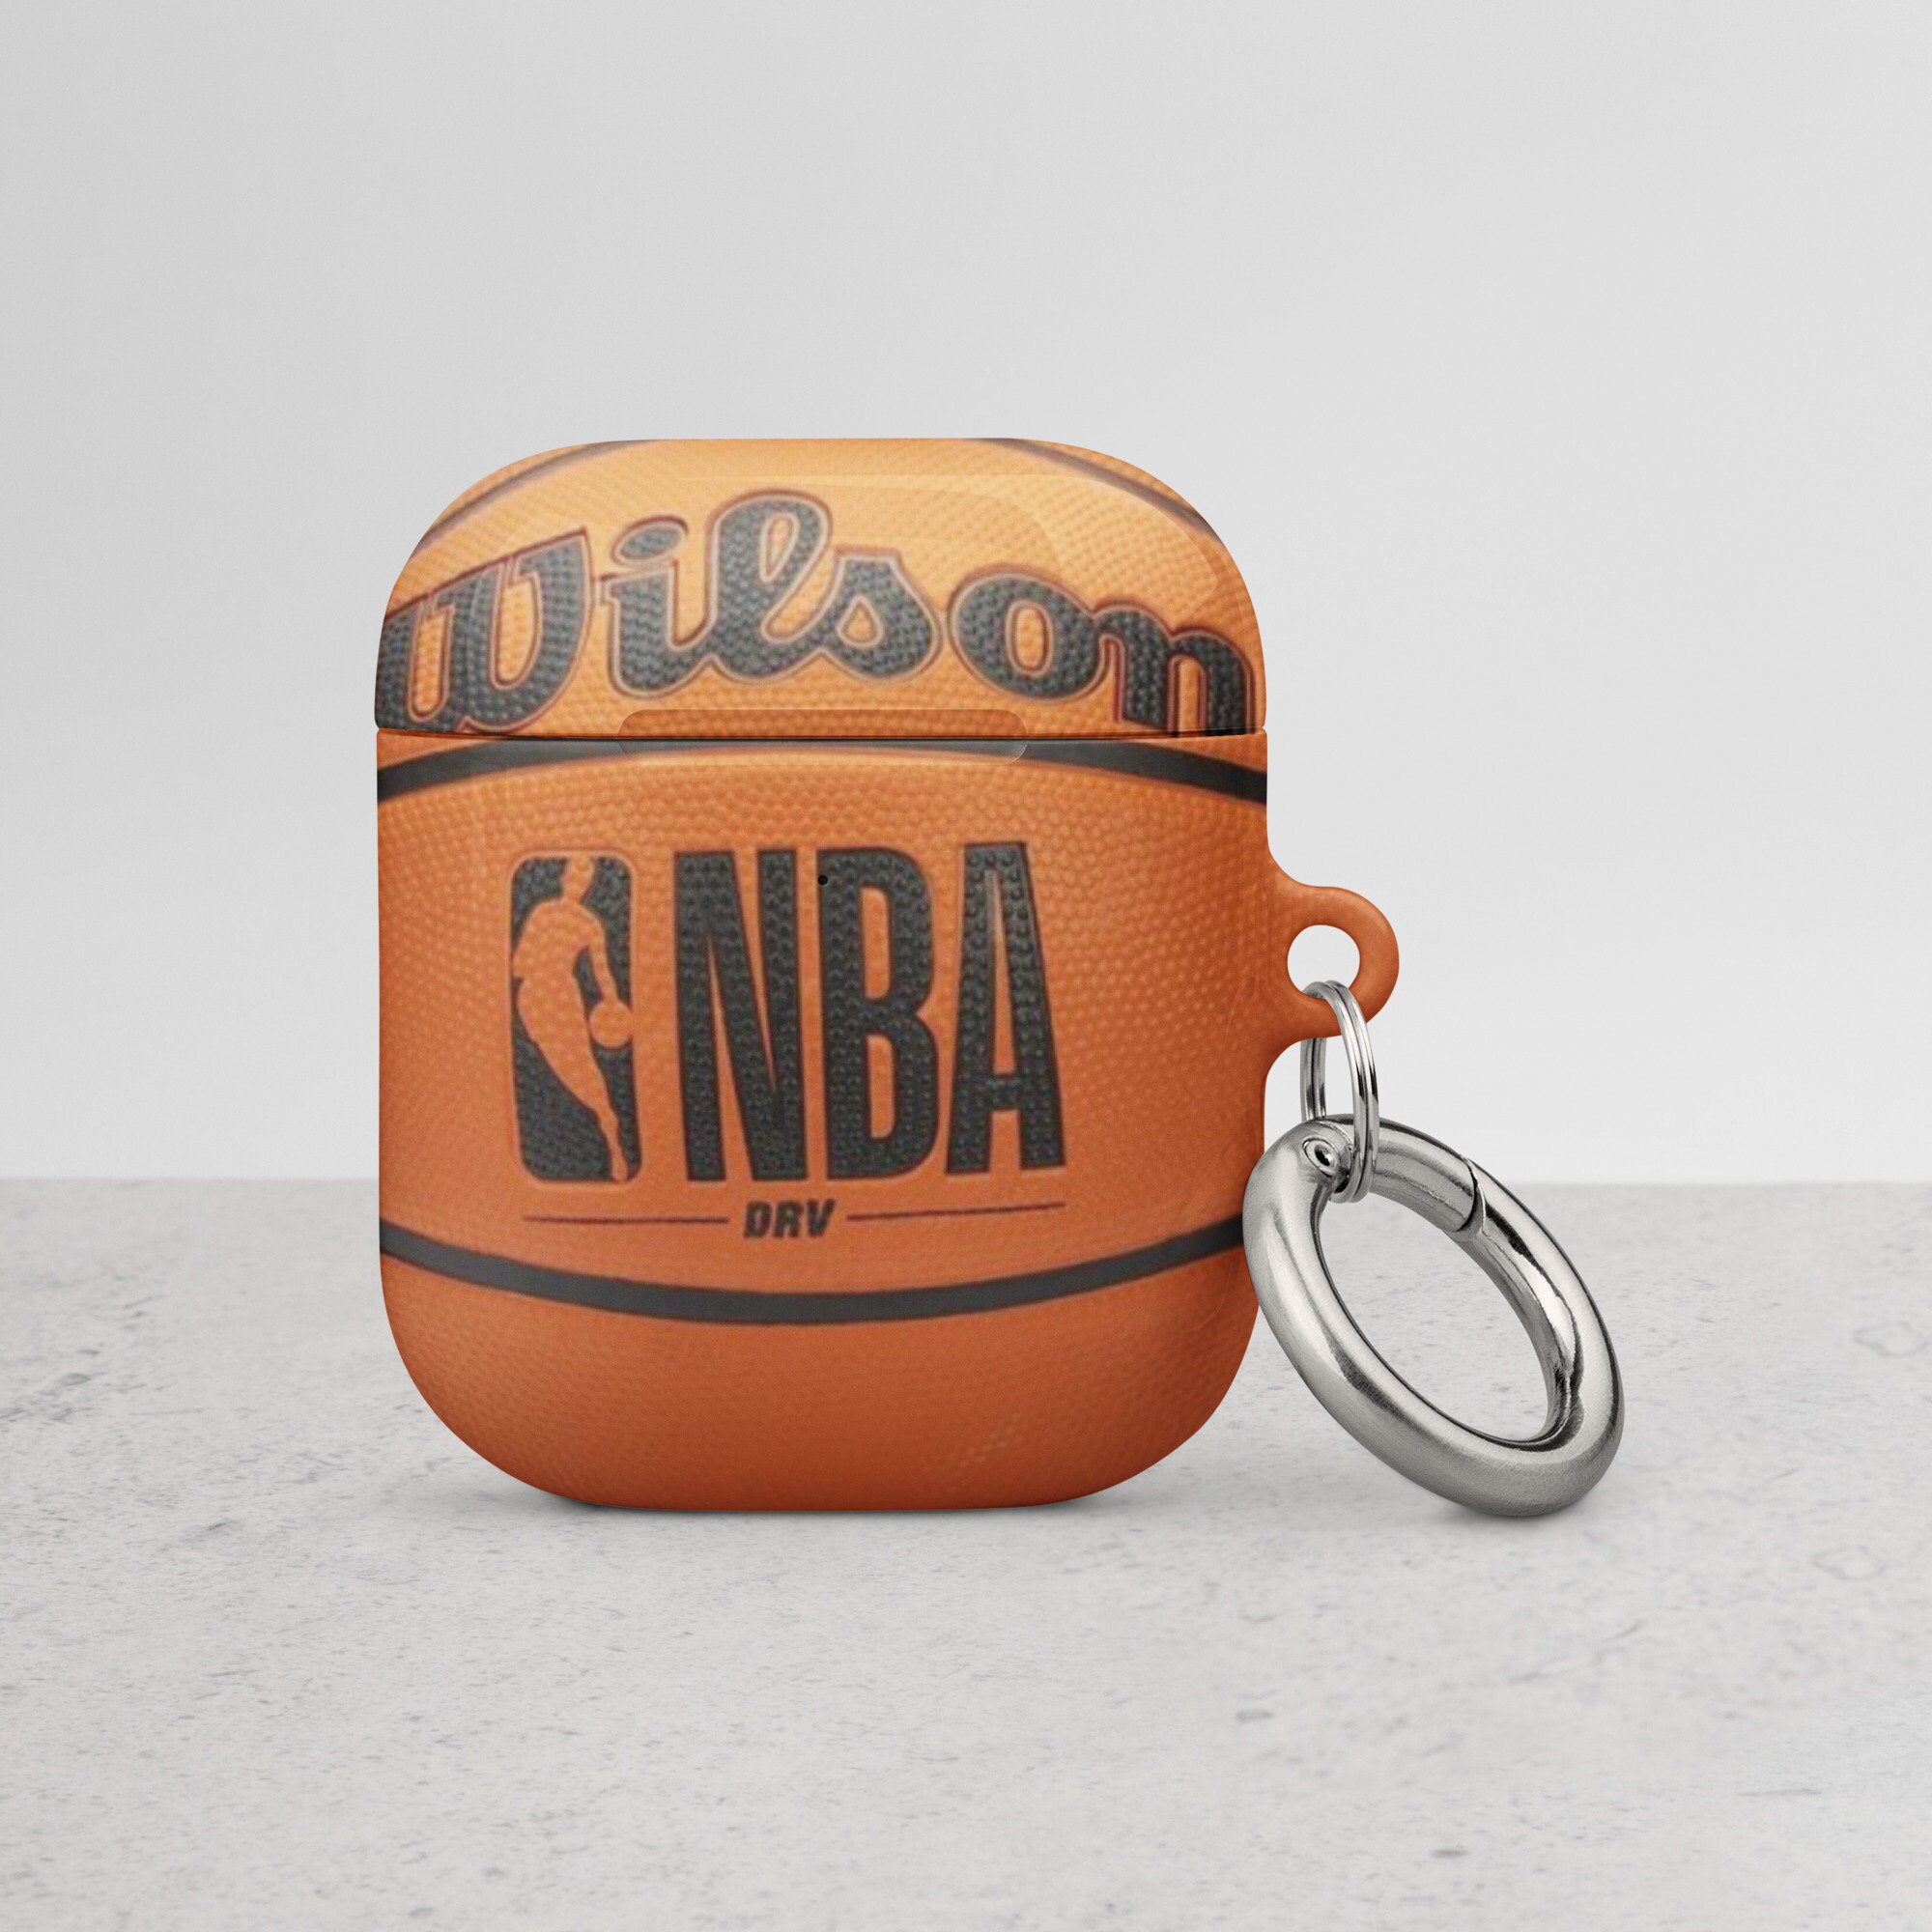 Coque iPhone 5 souple logo SPALDING – Le Coach Basket